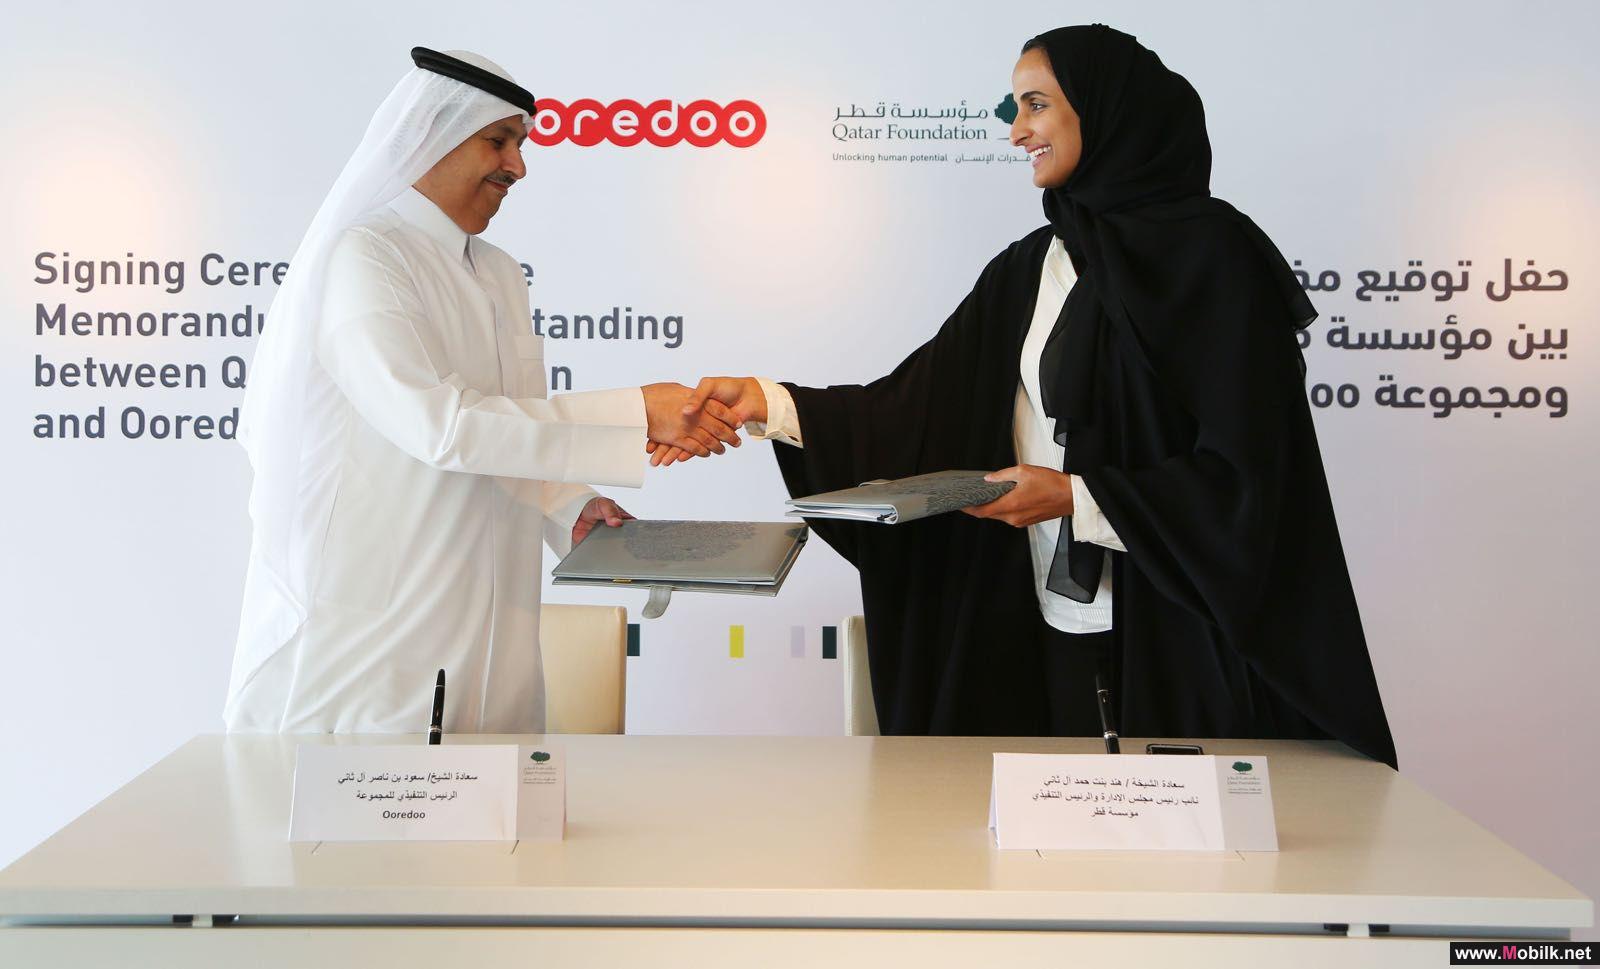  مؤسسة قطر ومجموعة Ooredoo تطلقان مبادرة تعاون مشترك جديدة 